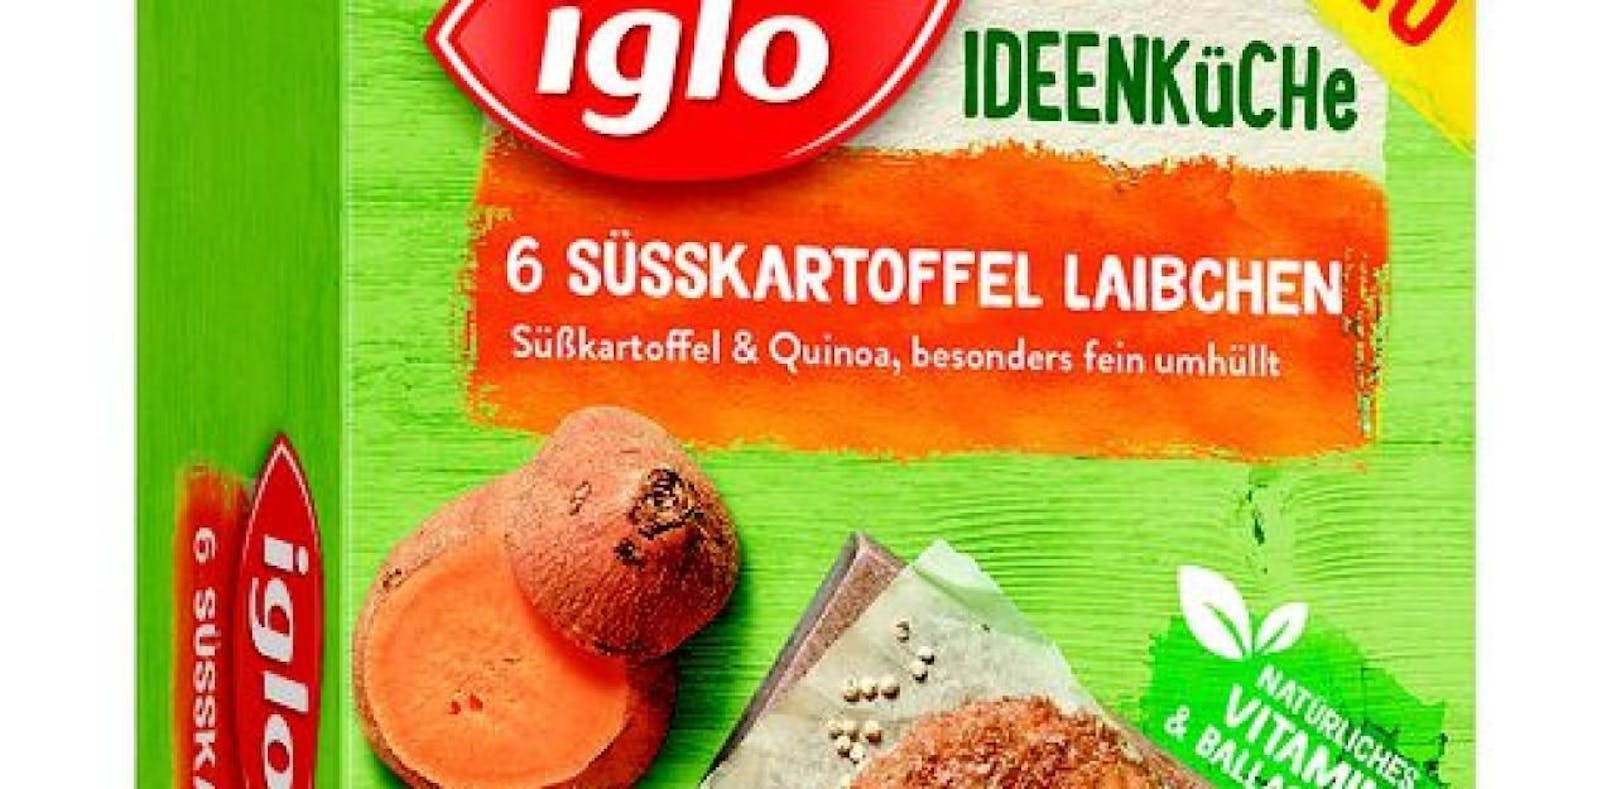 Vorsorglicher Rückruf von Iglo Süßkartoffel Laibchen 270g